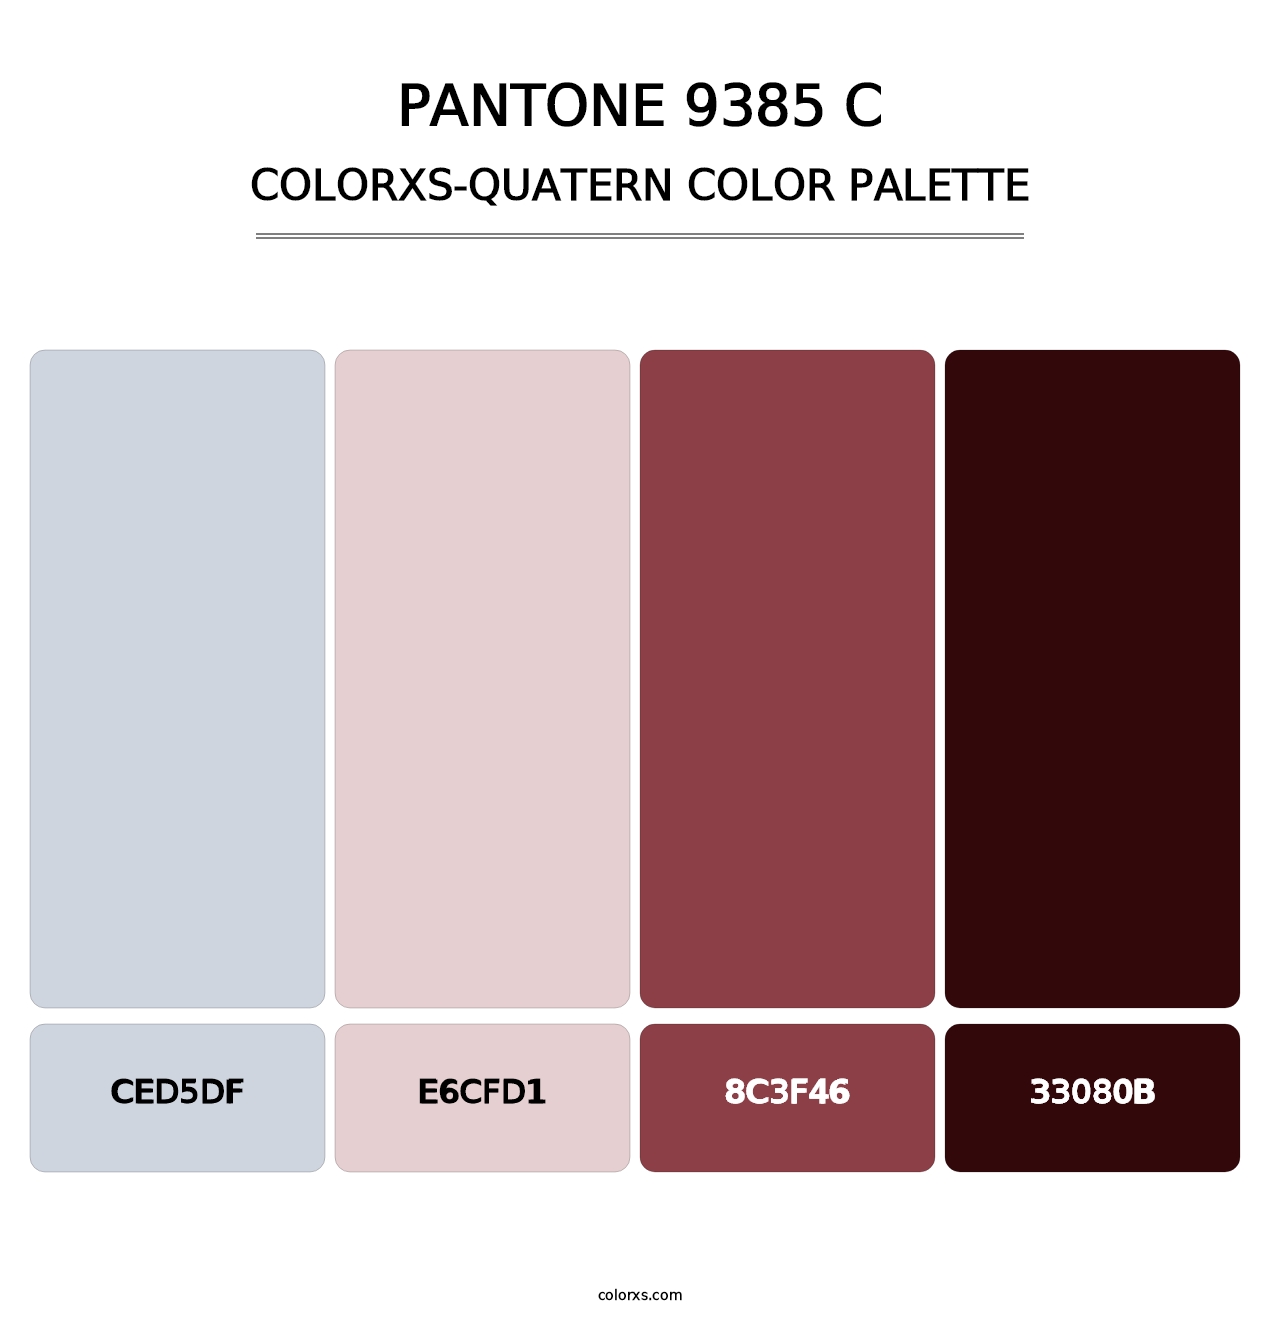 PANTONE 9385 C - Colorxs Quatern Palette